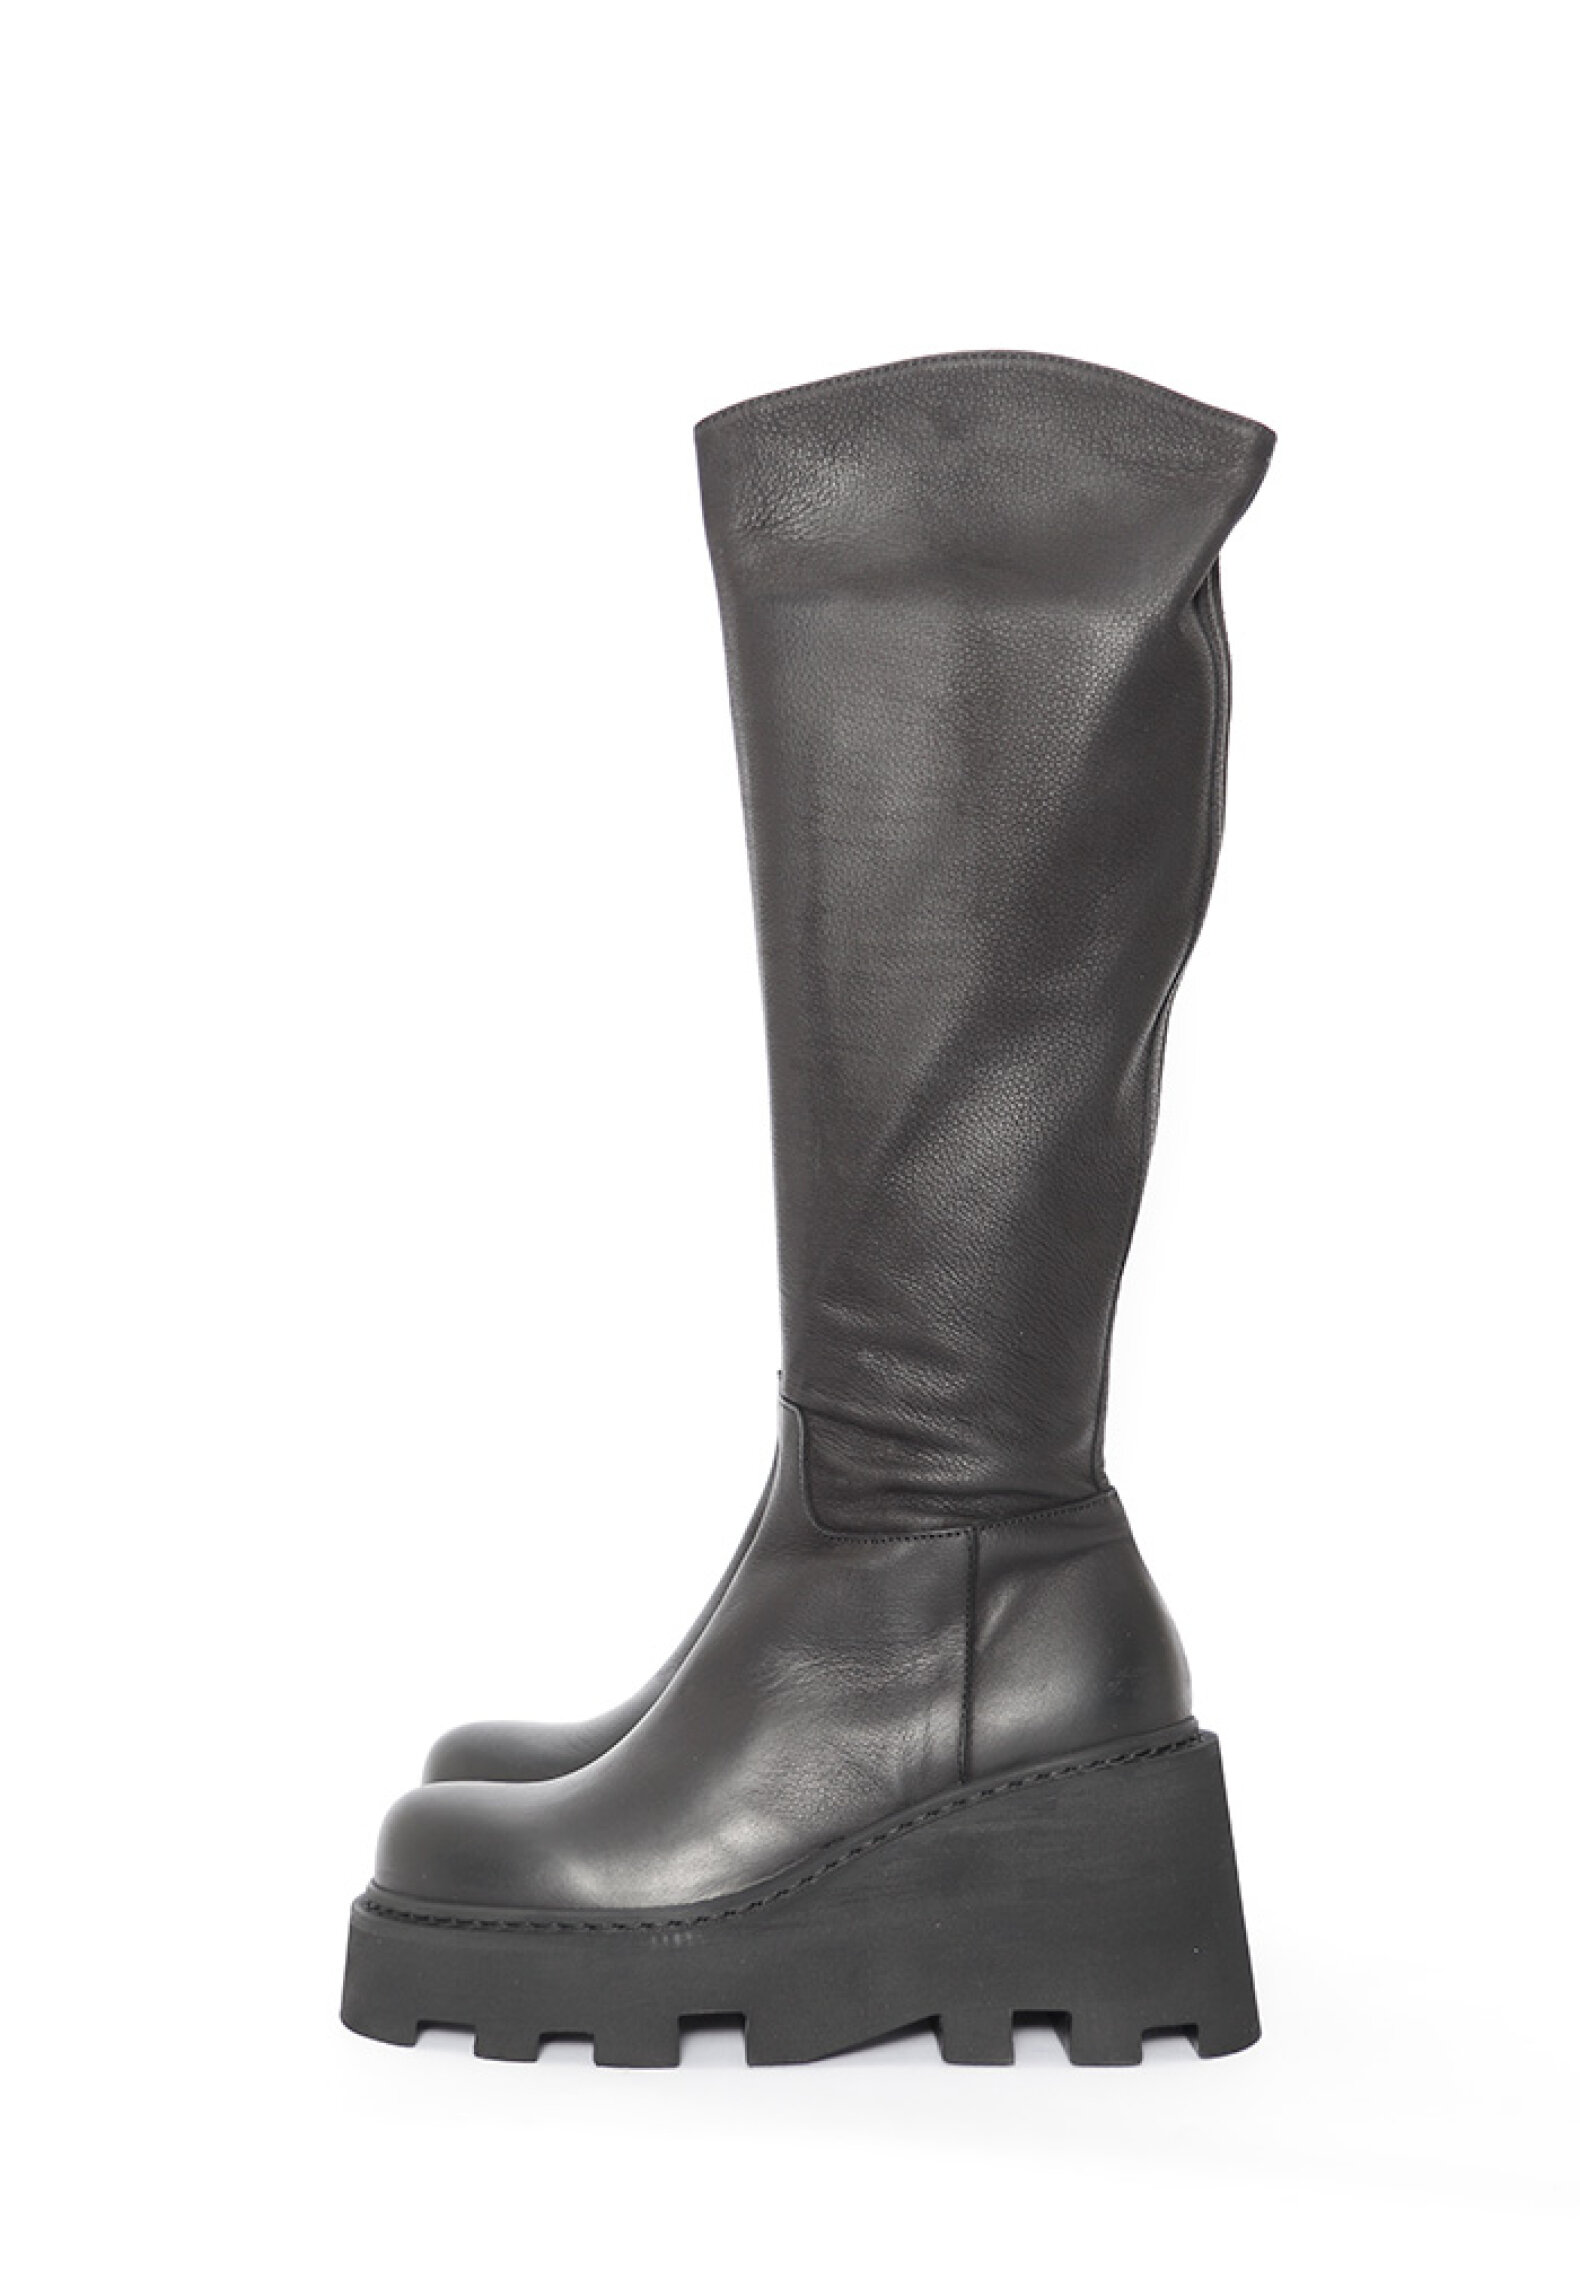 Long boots - Lofina - Long boot with zipper